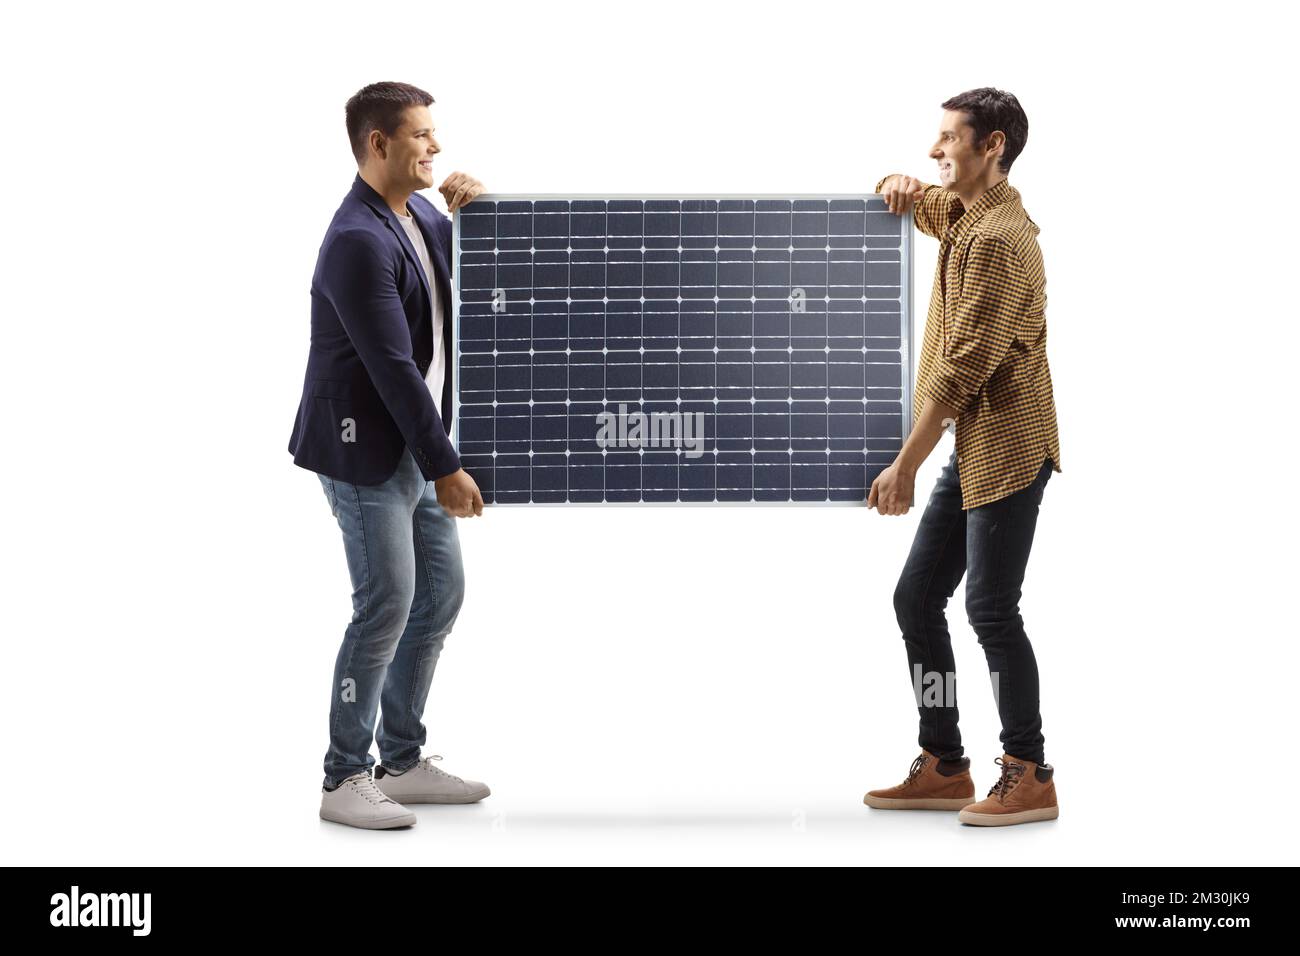 Immagine a profilo completo di due giovani uomini che trasportano un pannello solare isolato su sfondo bianco Foto Stock